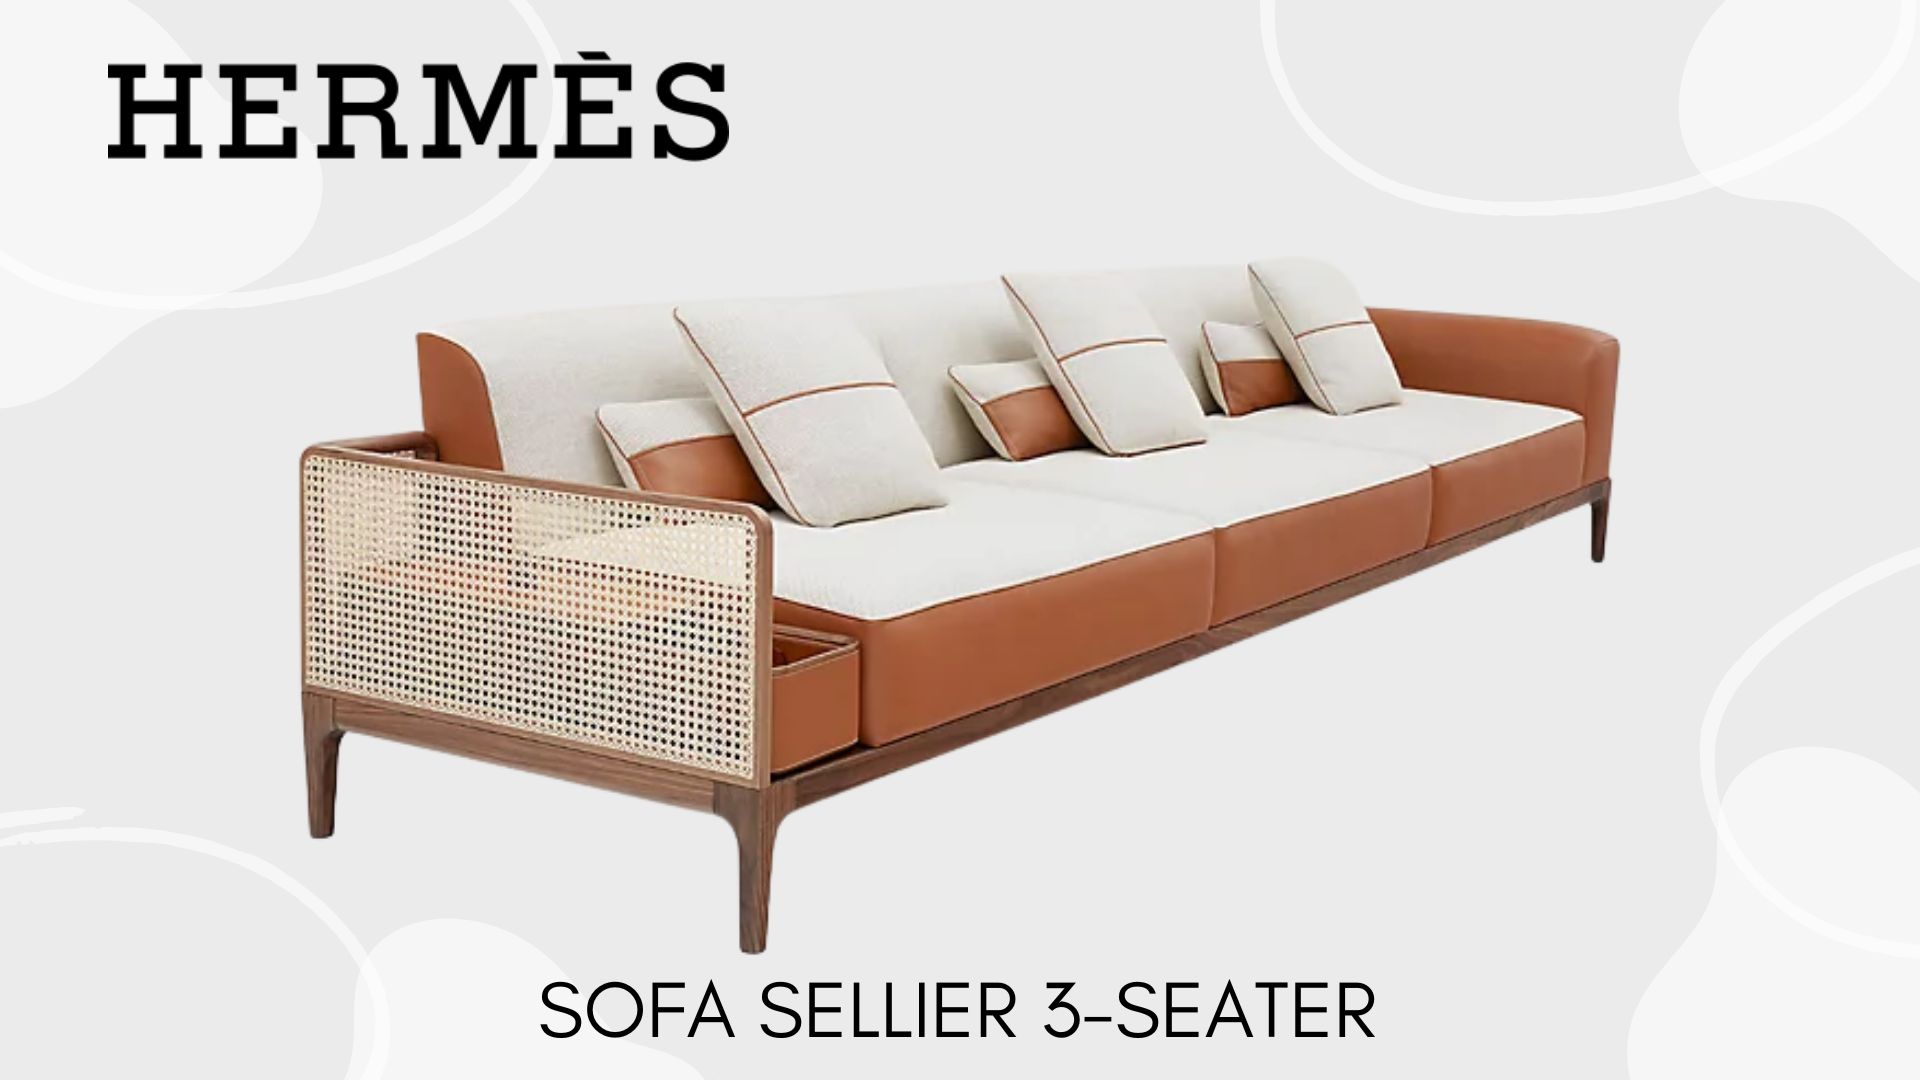 รวมแบรนด์หรู กับไลน์ Furniture และของตกแต่งบ้าน ที่หรูไม่แพ้งานกูตูบนรันเวย์ Sofa Sellier 3-Seater